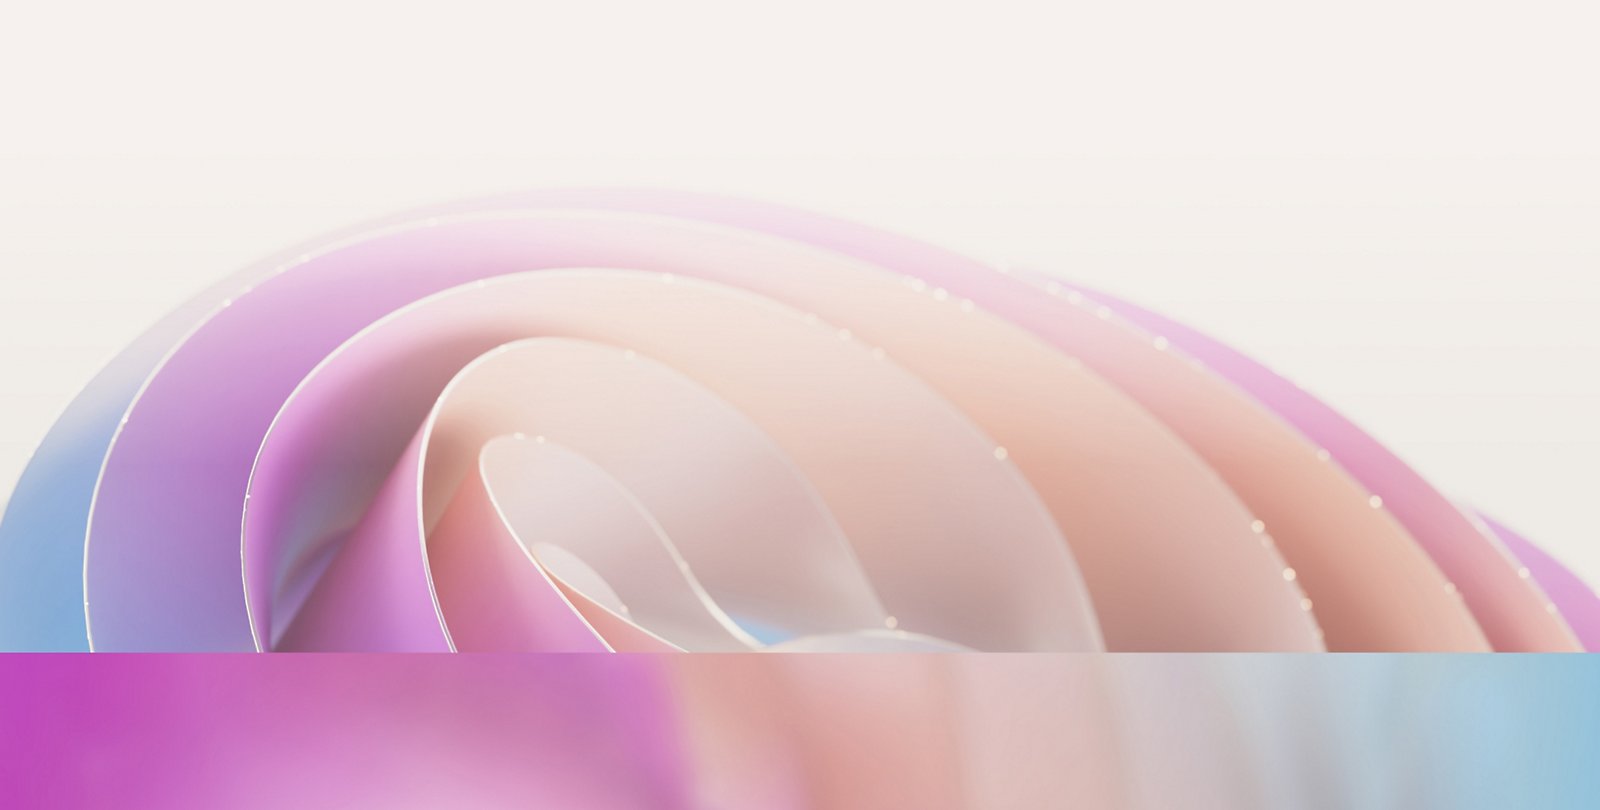 Abstrakt bild med mjuka, överlappande pastellkurvor i nyanser av rosa, lila och blått, vilket skapar ett mjukt vågliknande mönster.